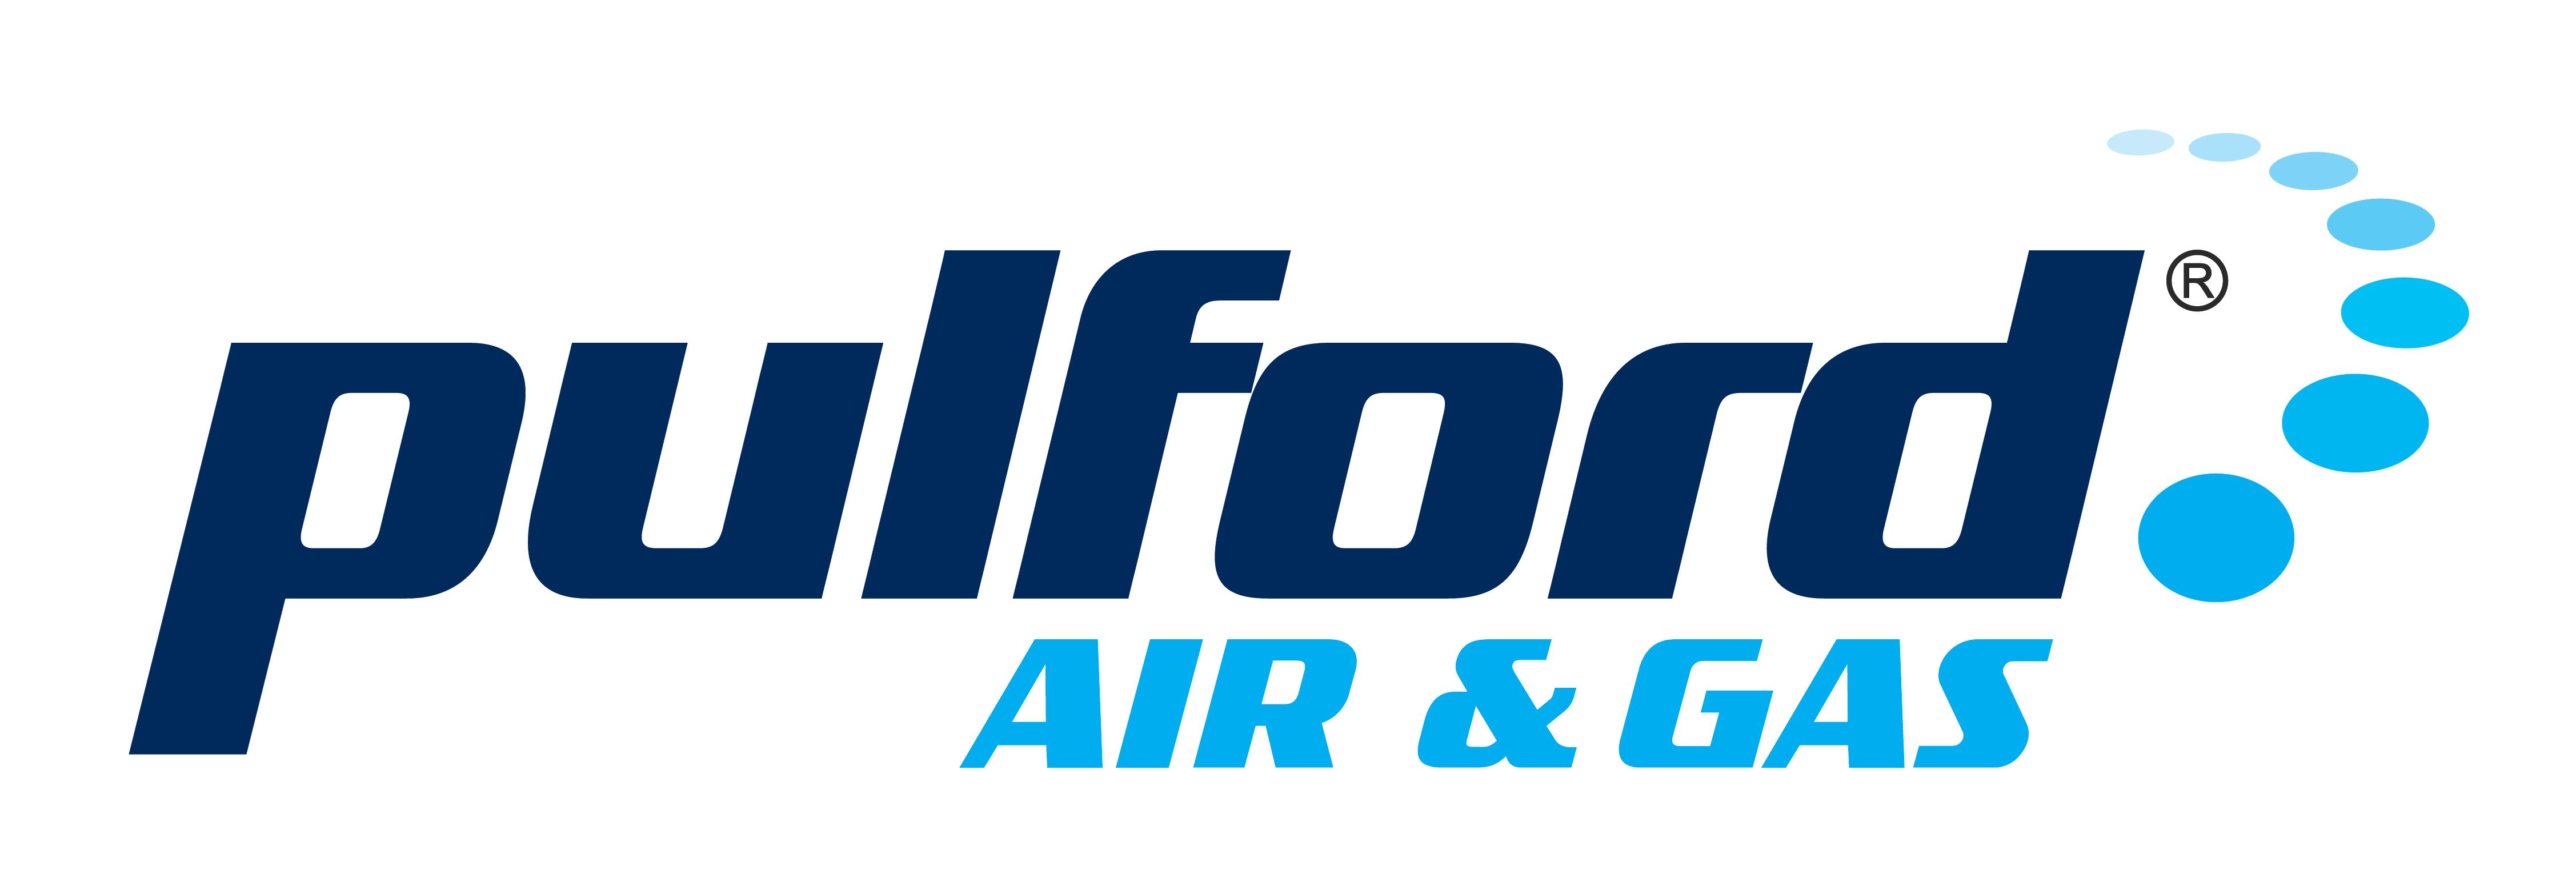 Pulford Air & Gas